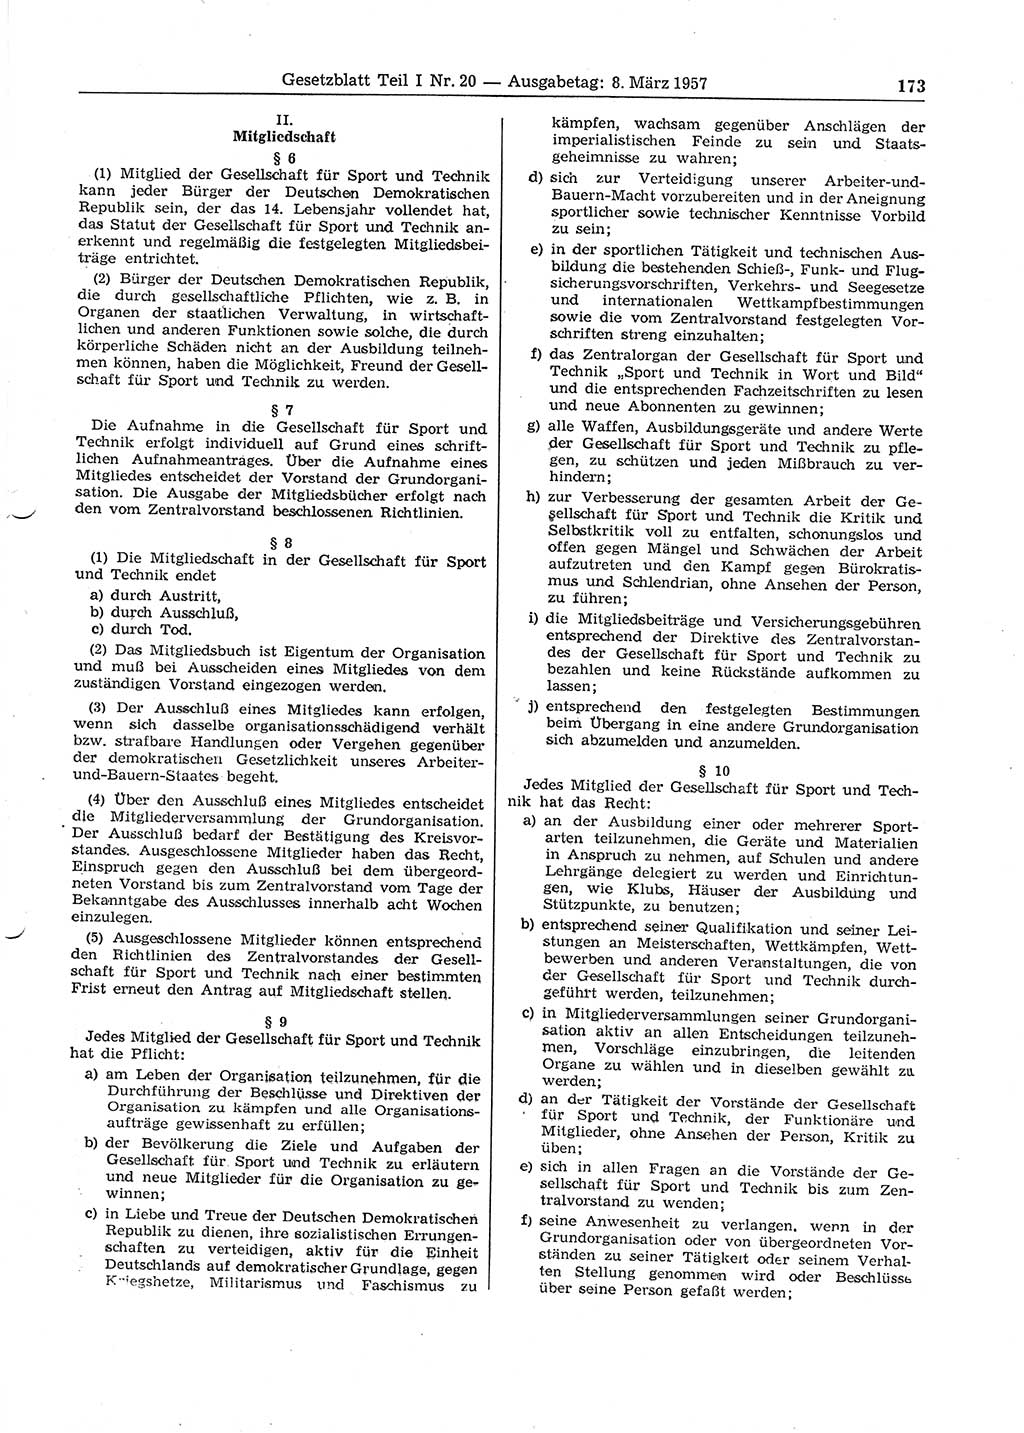 Gesetzblatt (GBl.) der Deutschen Demokratischen Republik (DDR) Teil Ⅰ 1957, Seite 173 (GBl. DDR Ⅰ 1957, S. 173)